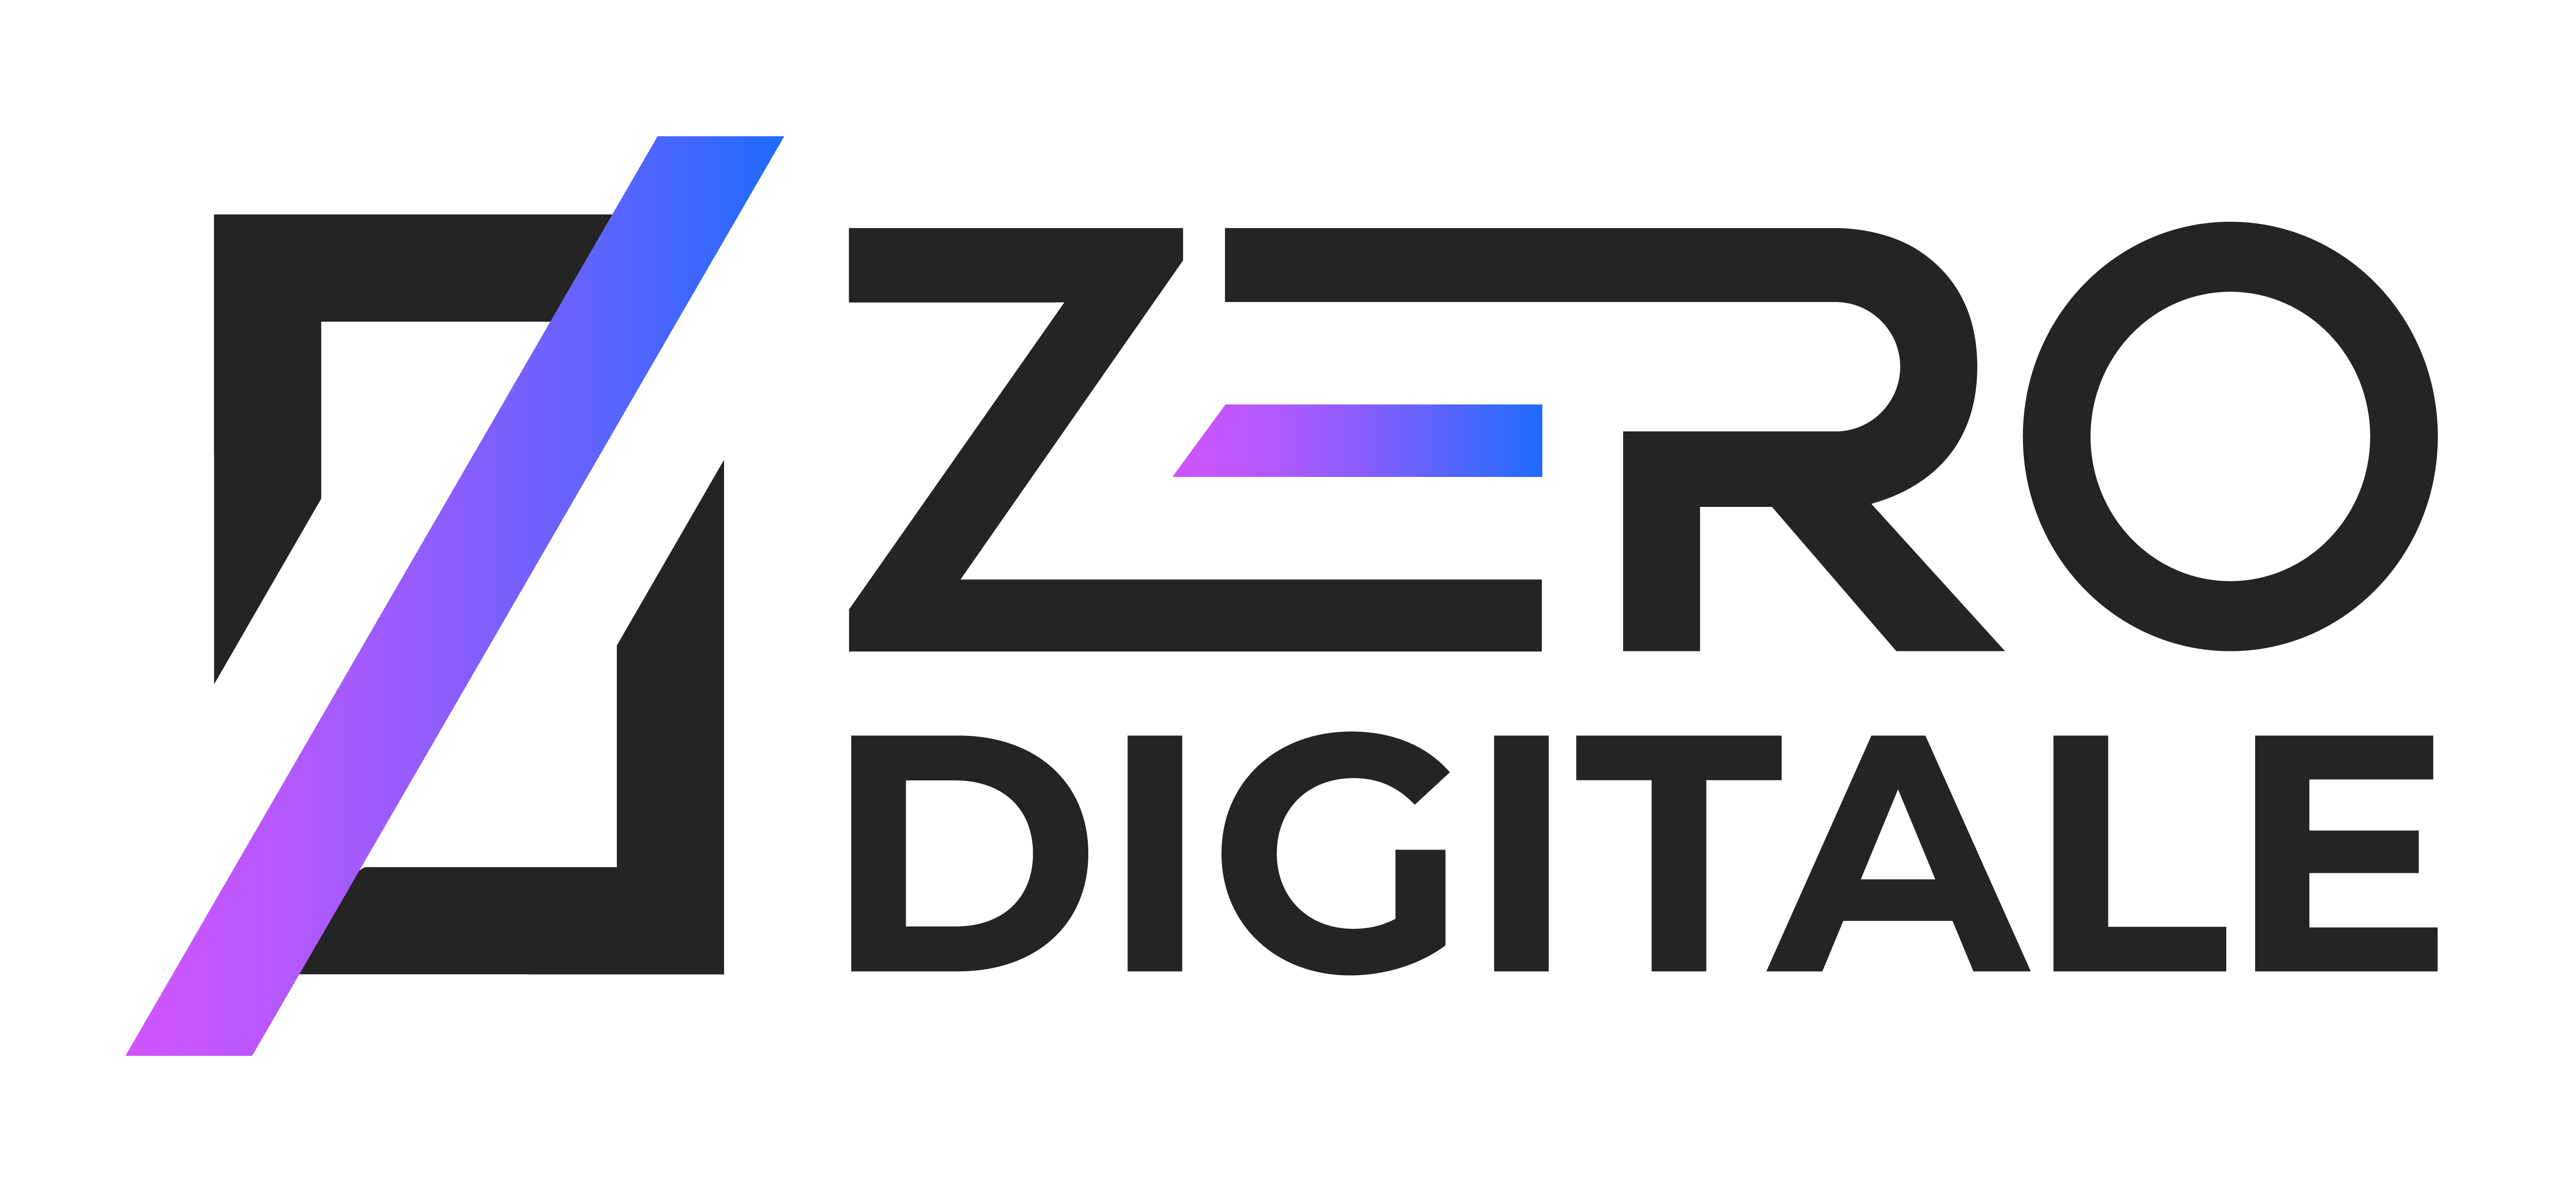 Zero Digitale